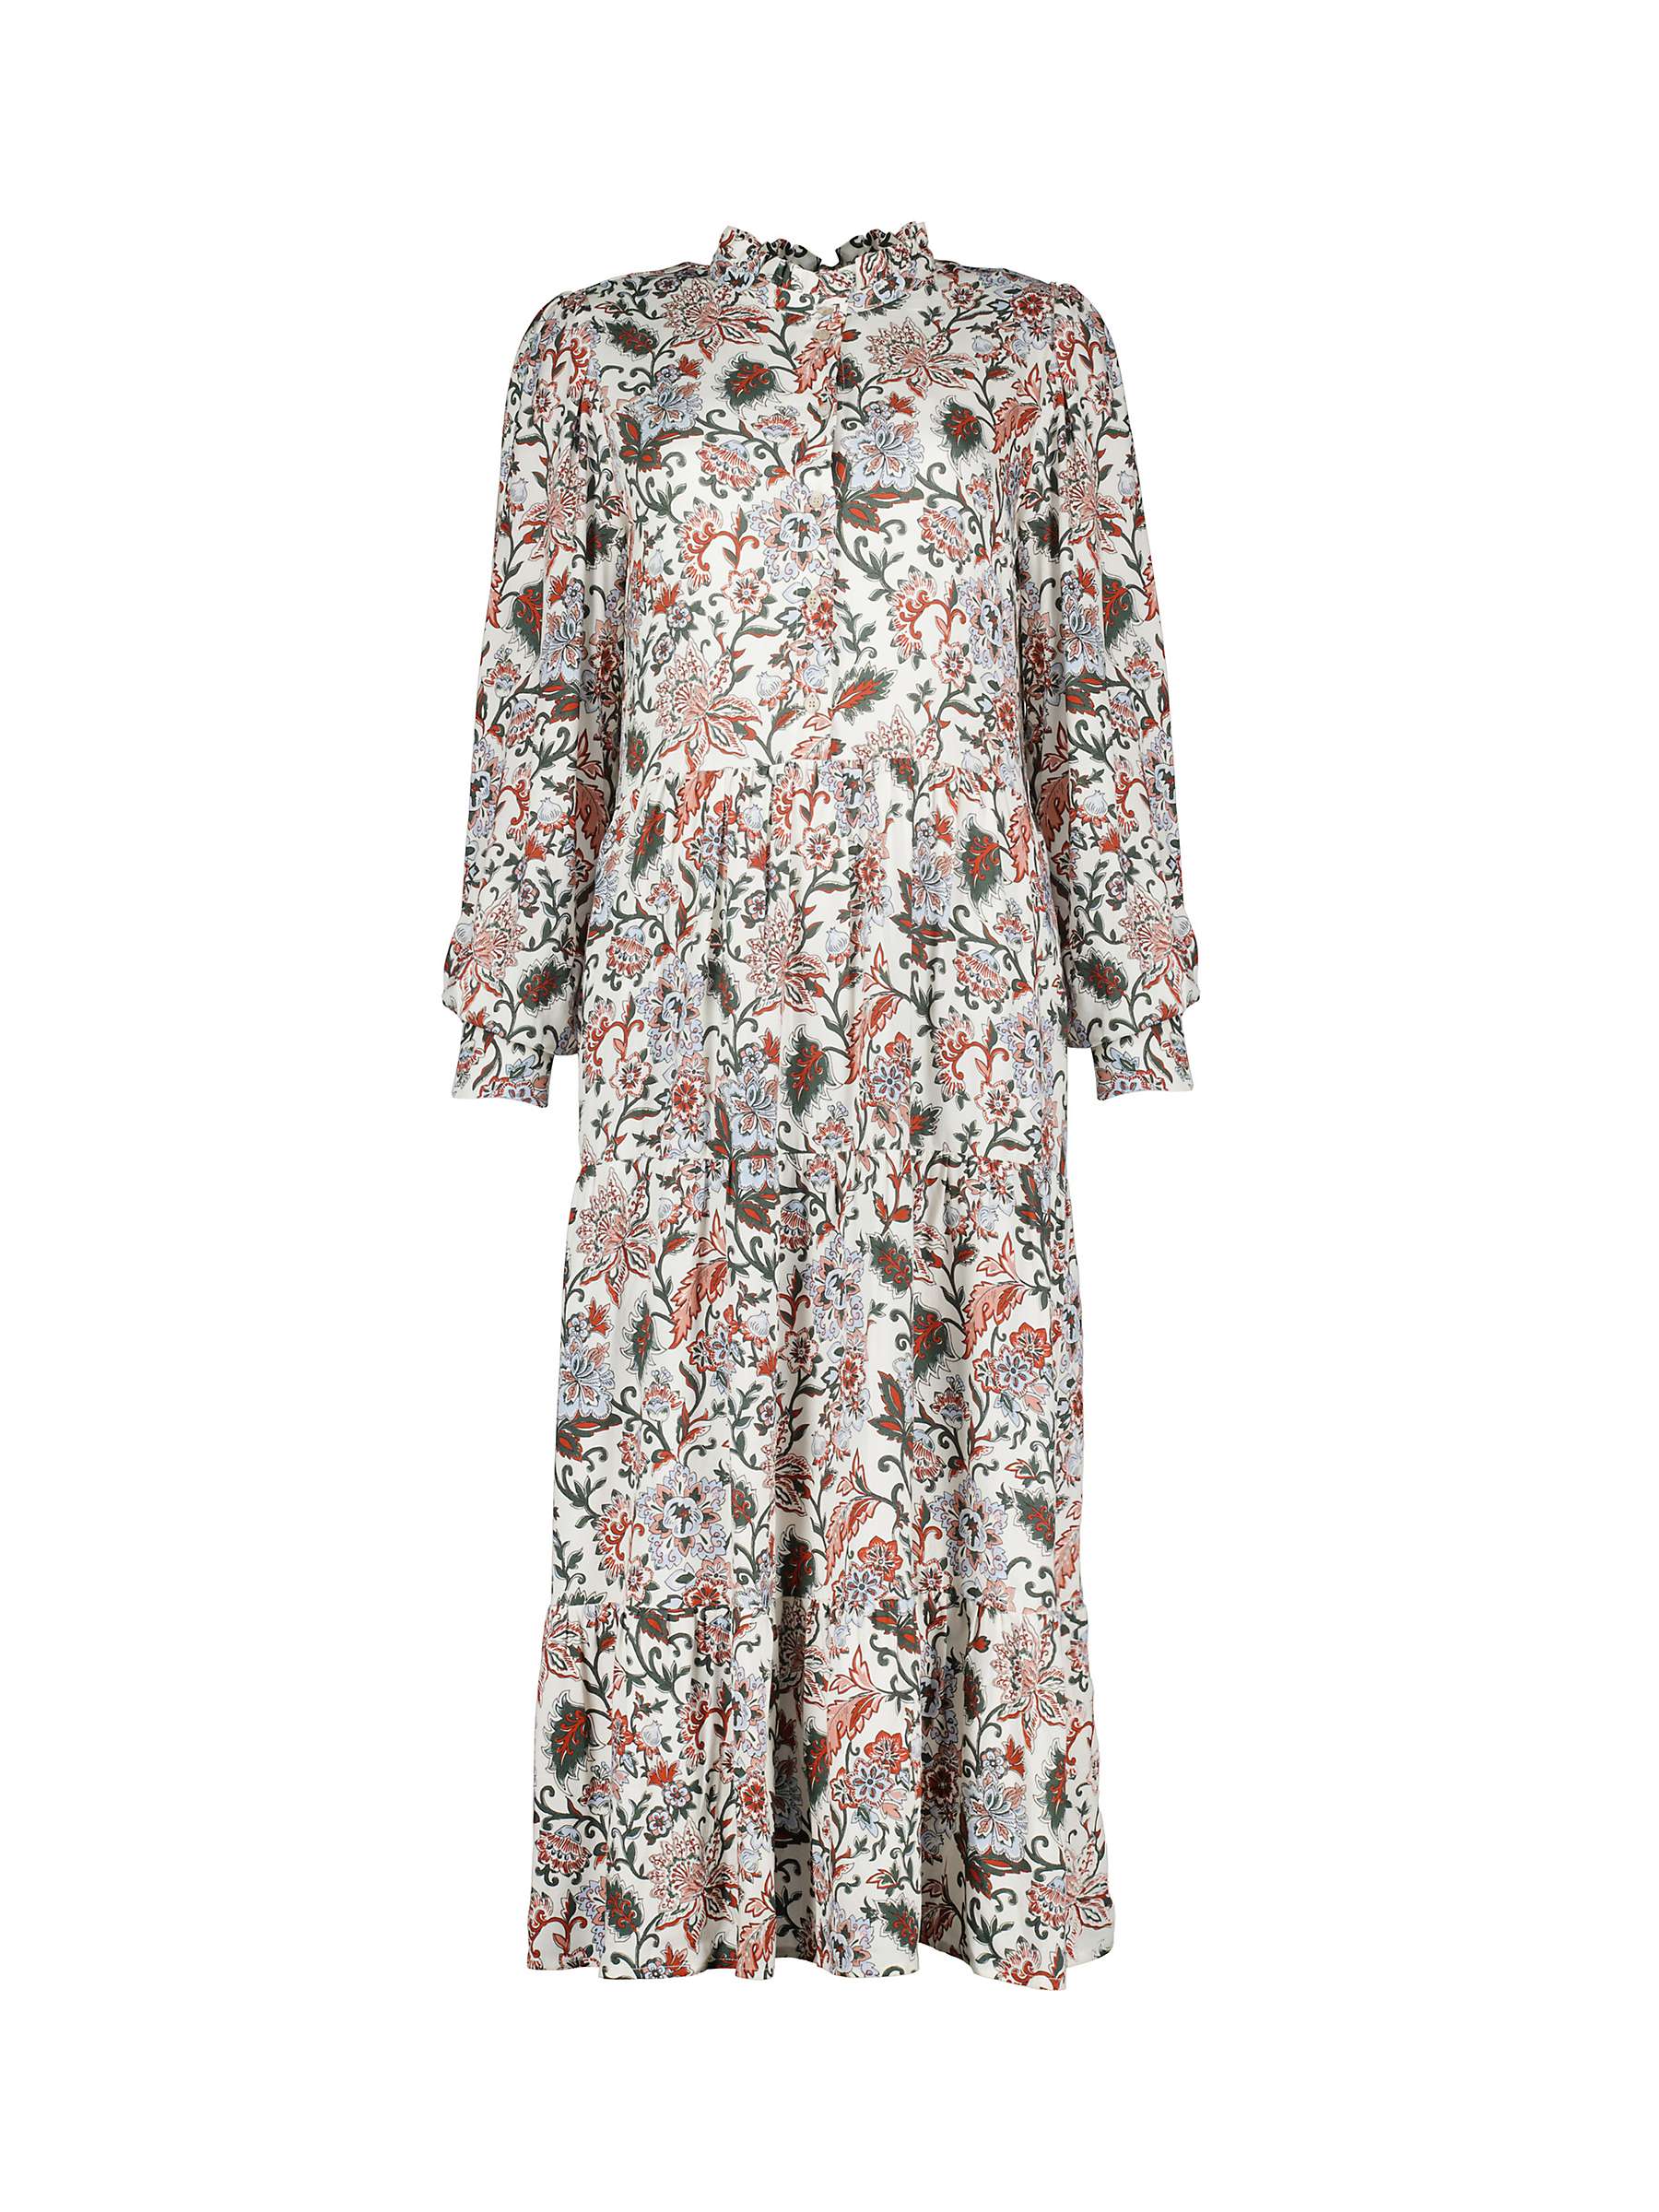 Buy Baukjen Arlette Folk Print Midi Dress, Khaki/Multi Online at johnlewis.com